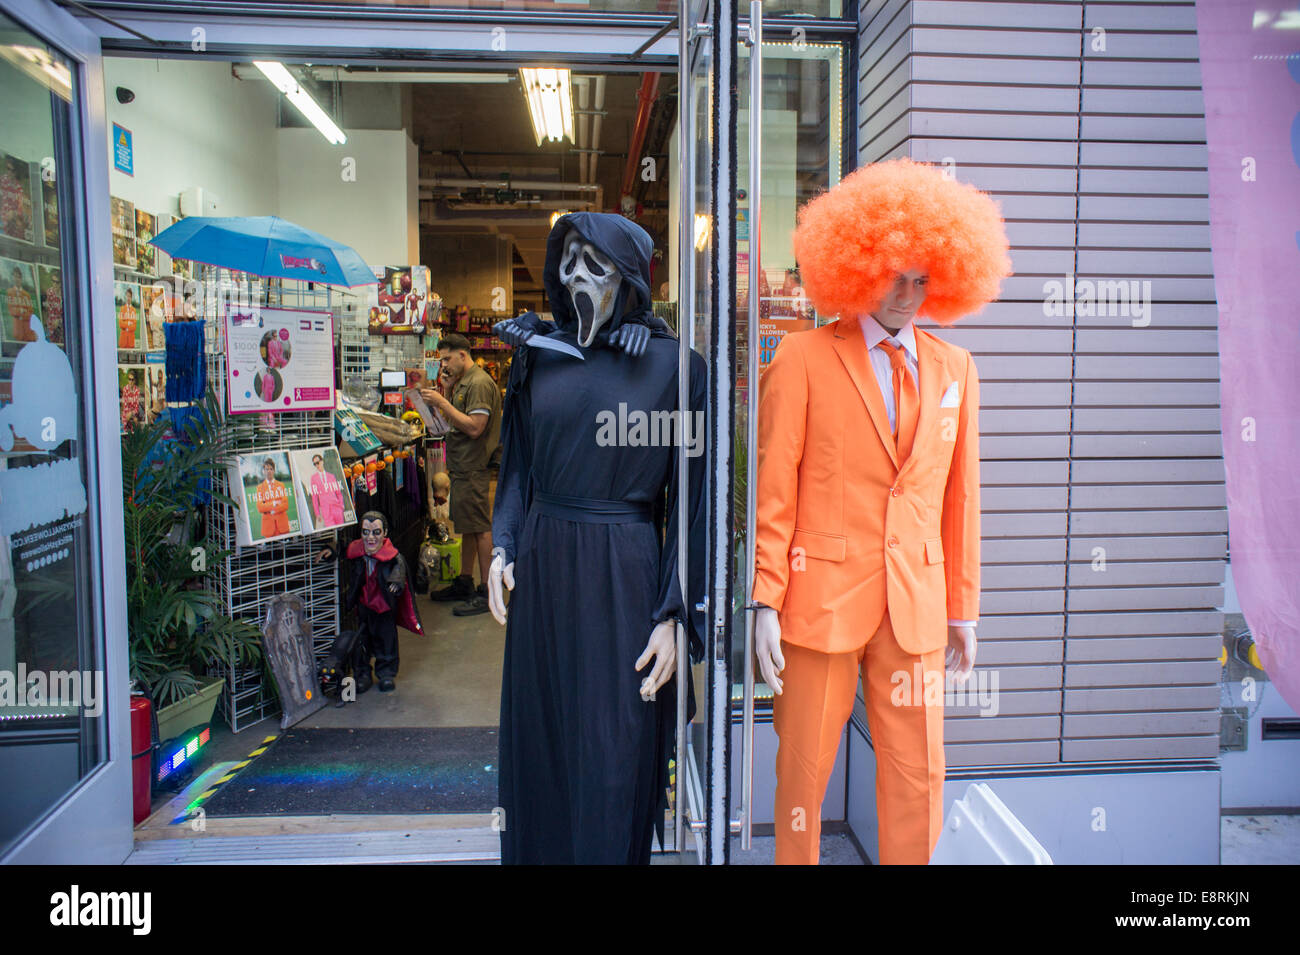 Où trouver des costumes à New York pour Halloween ?